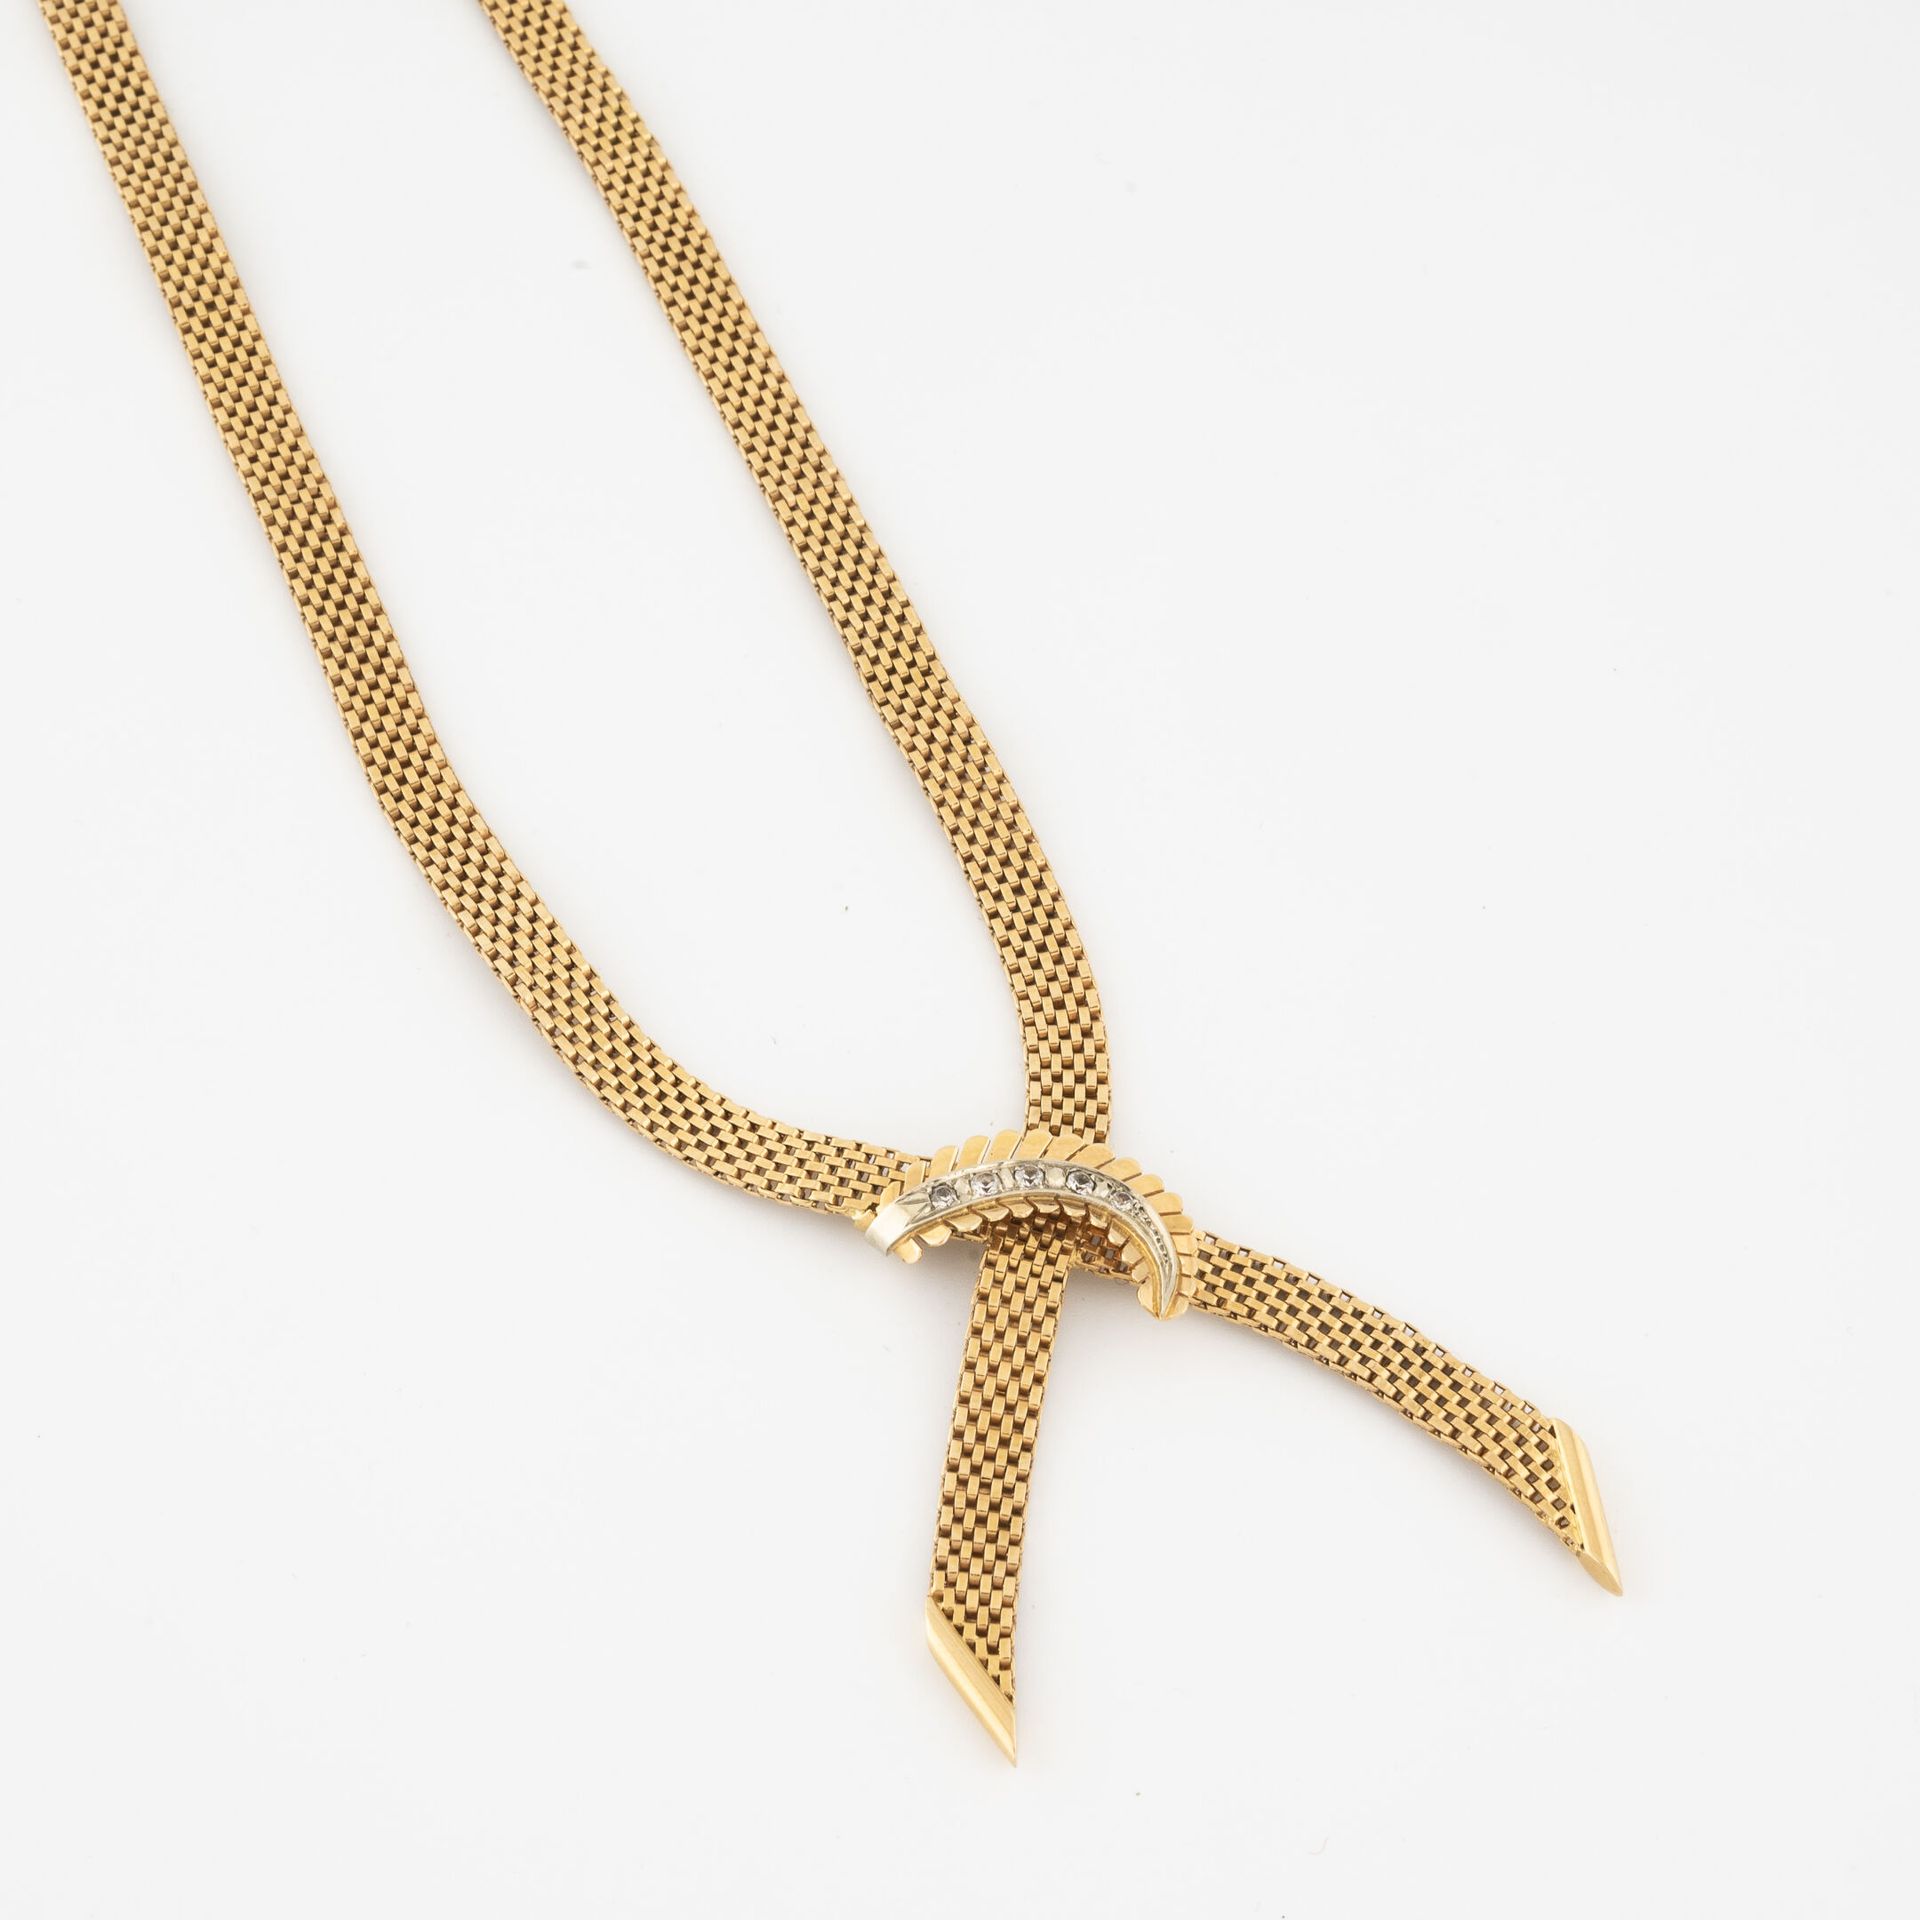 Null 黃金（750）平鏈條項鍊，領口打結為葉子圖案，以種子鑲嵌的圓形切割鑽石裝飾。

带安全链的棘轮扣。 

毛重：38.7克。- 长度：45厘米。 

刮&hellip;